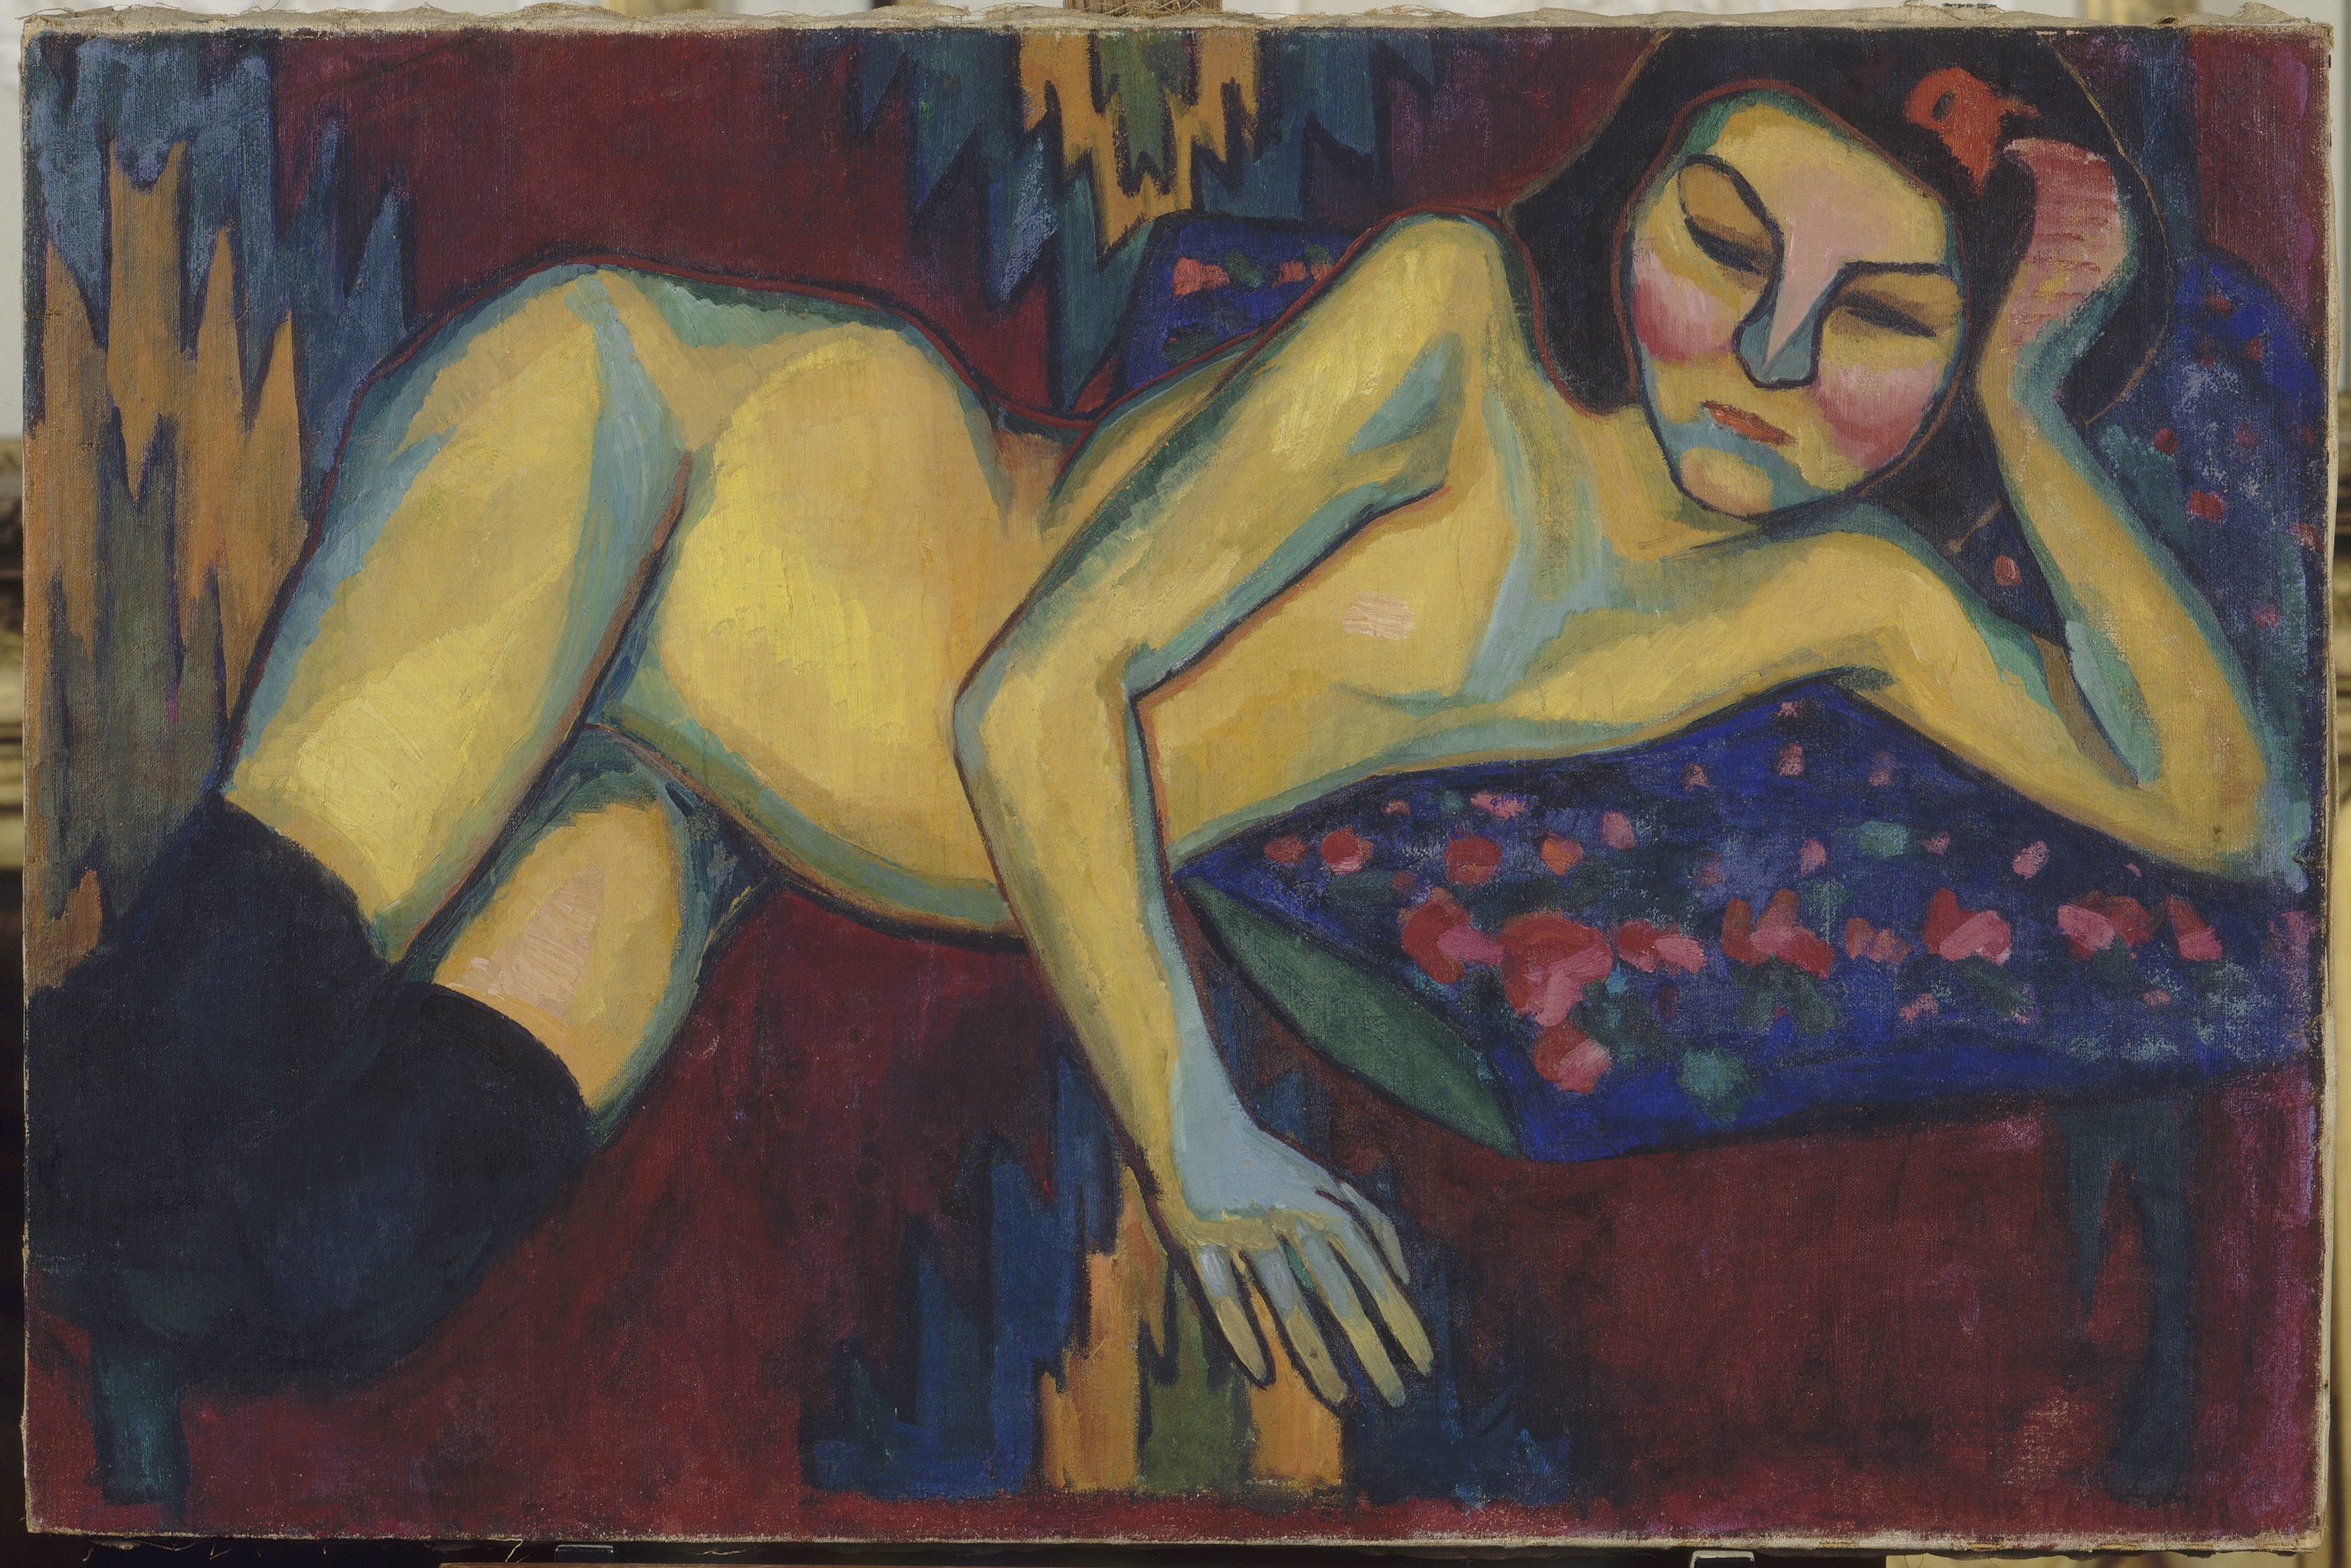 برهنه زرد by Sonia Delaunay - 1908 - 65 x 98,3 cm 